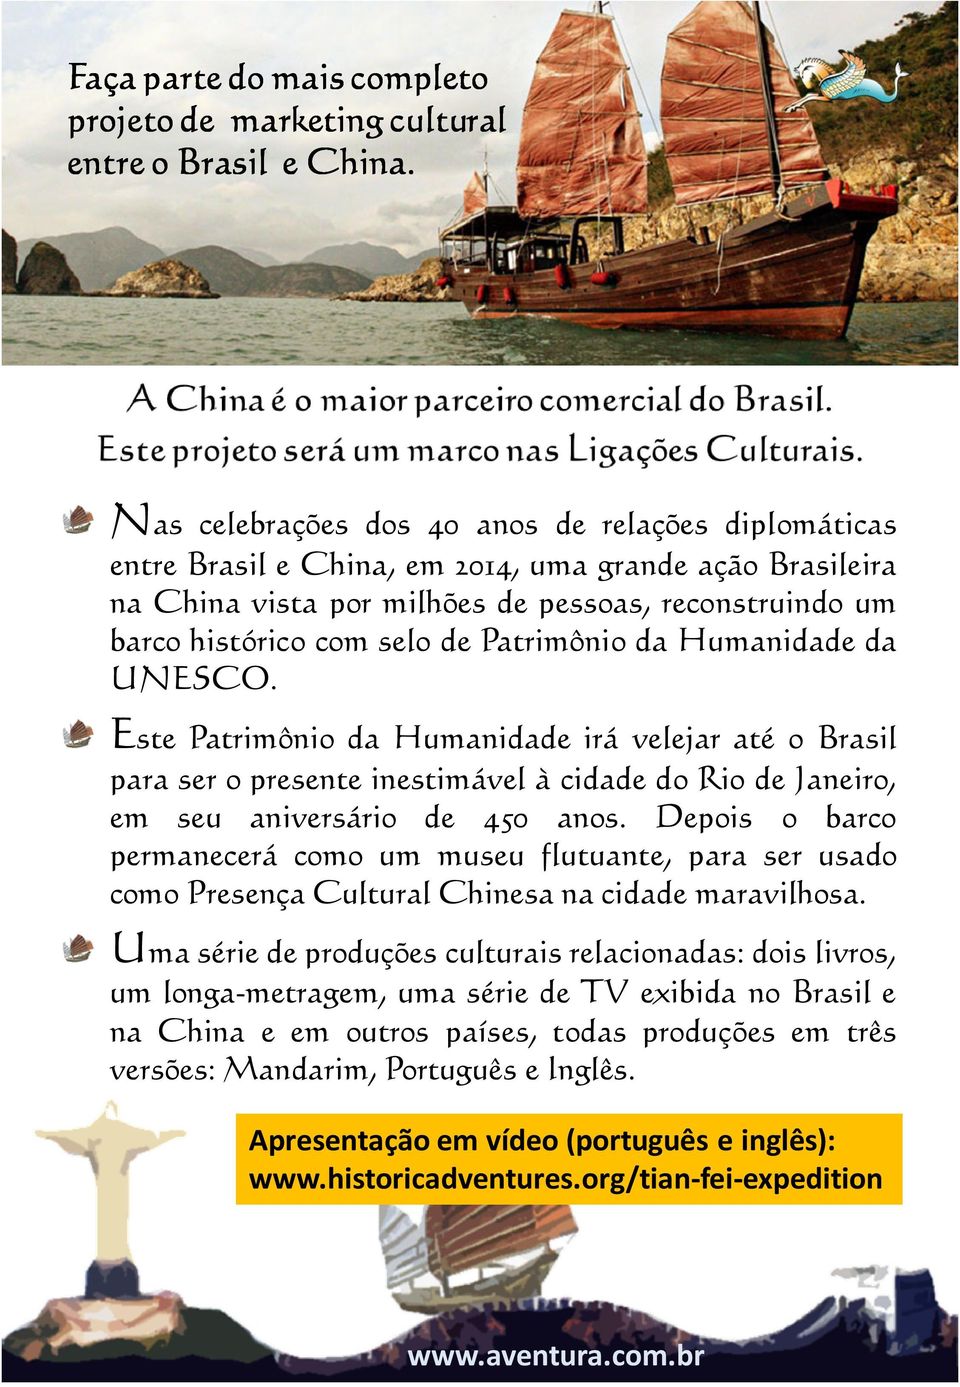 Patrimônio da Humanidade da UNESCO. Este Patrimônio da Humanidade irá velejar até o Brasil para ser o presente inestimável à cidade do Rio de Janeiro, em seu aniversário de 450 anos.